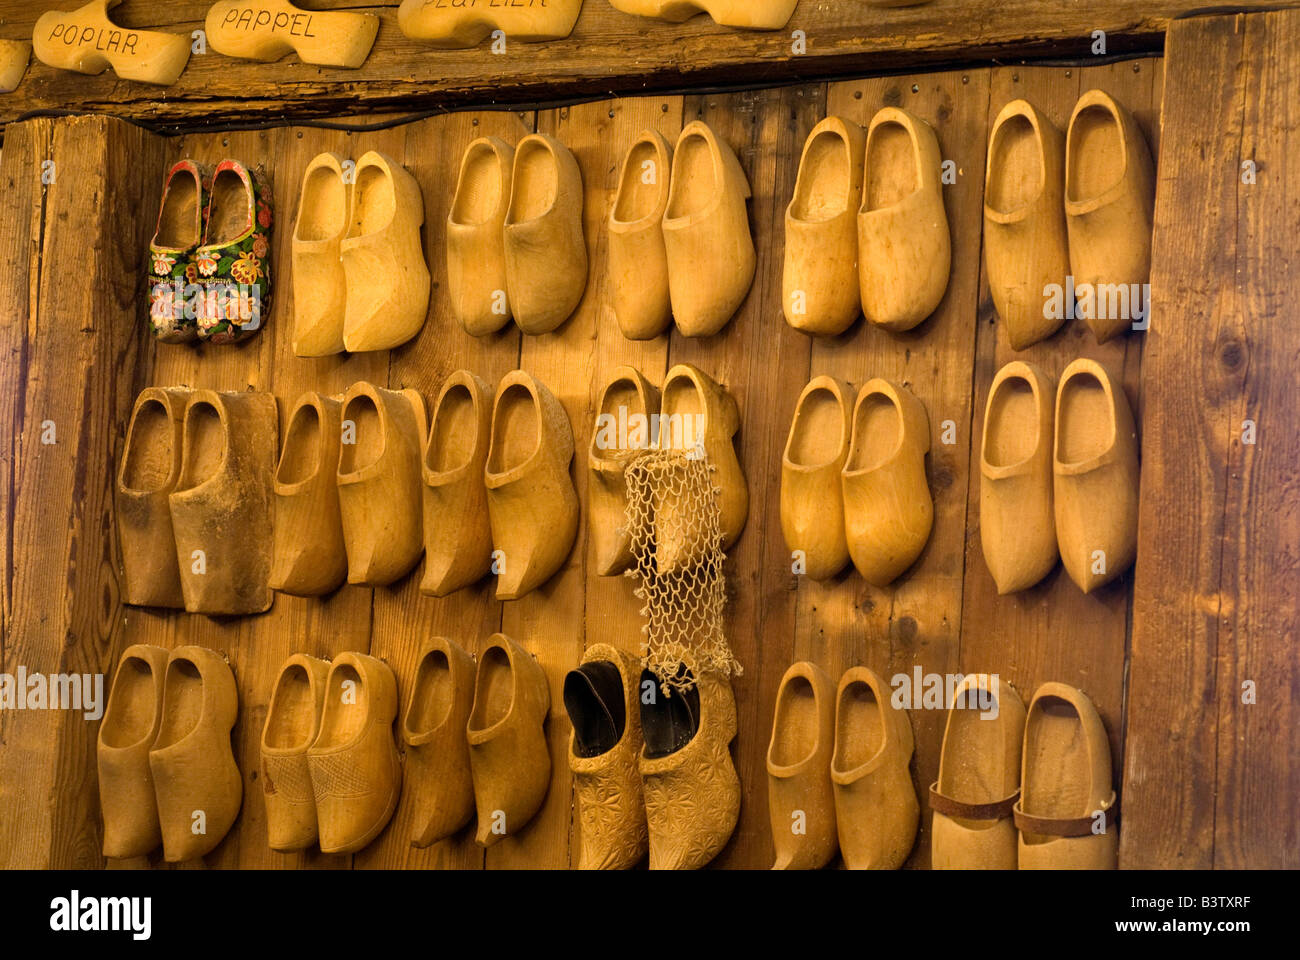 Netherlands (aka Holland), Zaandam. Zaanse Schans, Wooden Shoe Museum, styles of clogs on wall display. Stock Photo